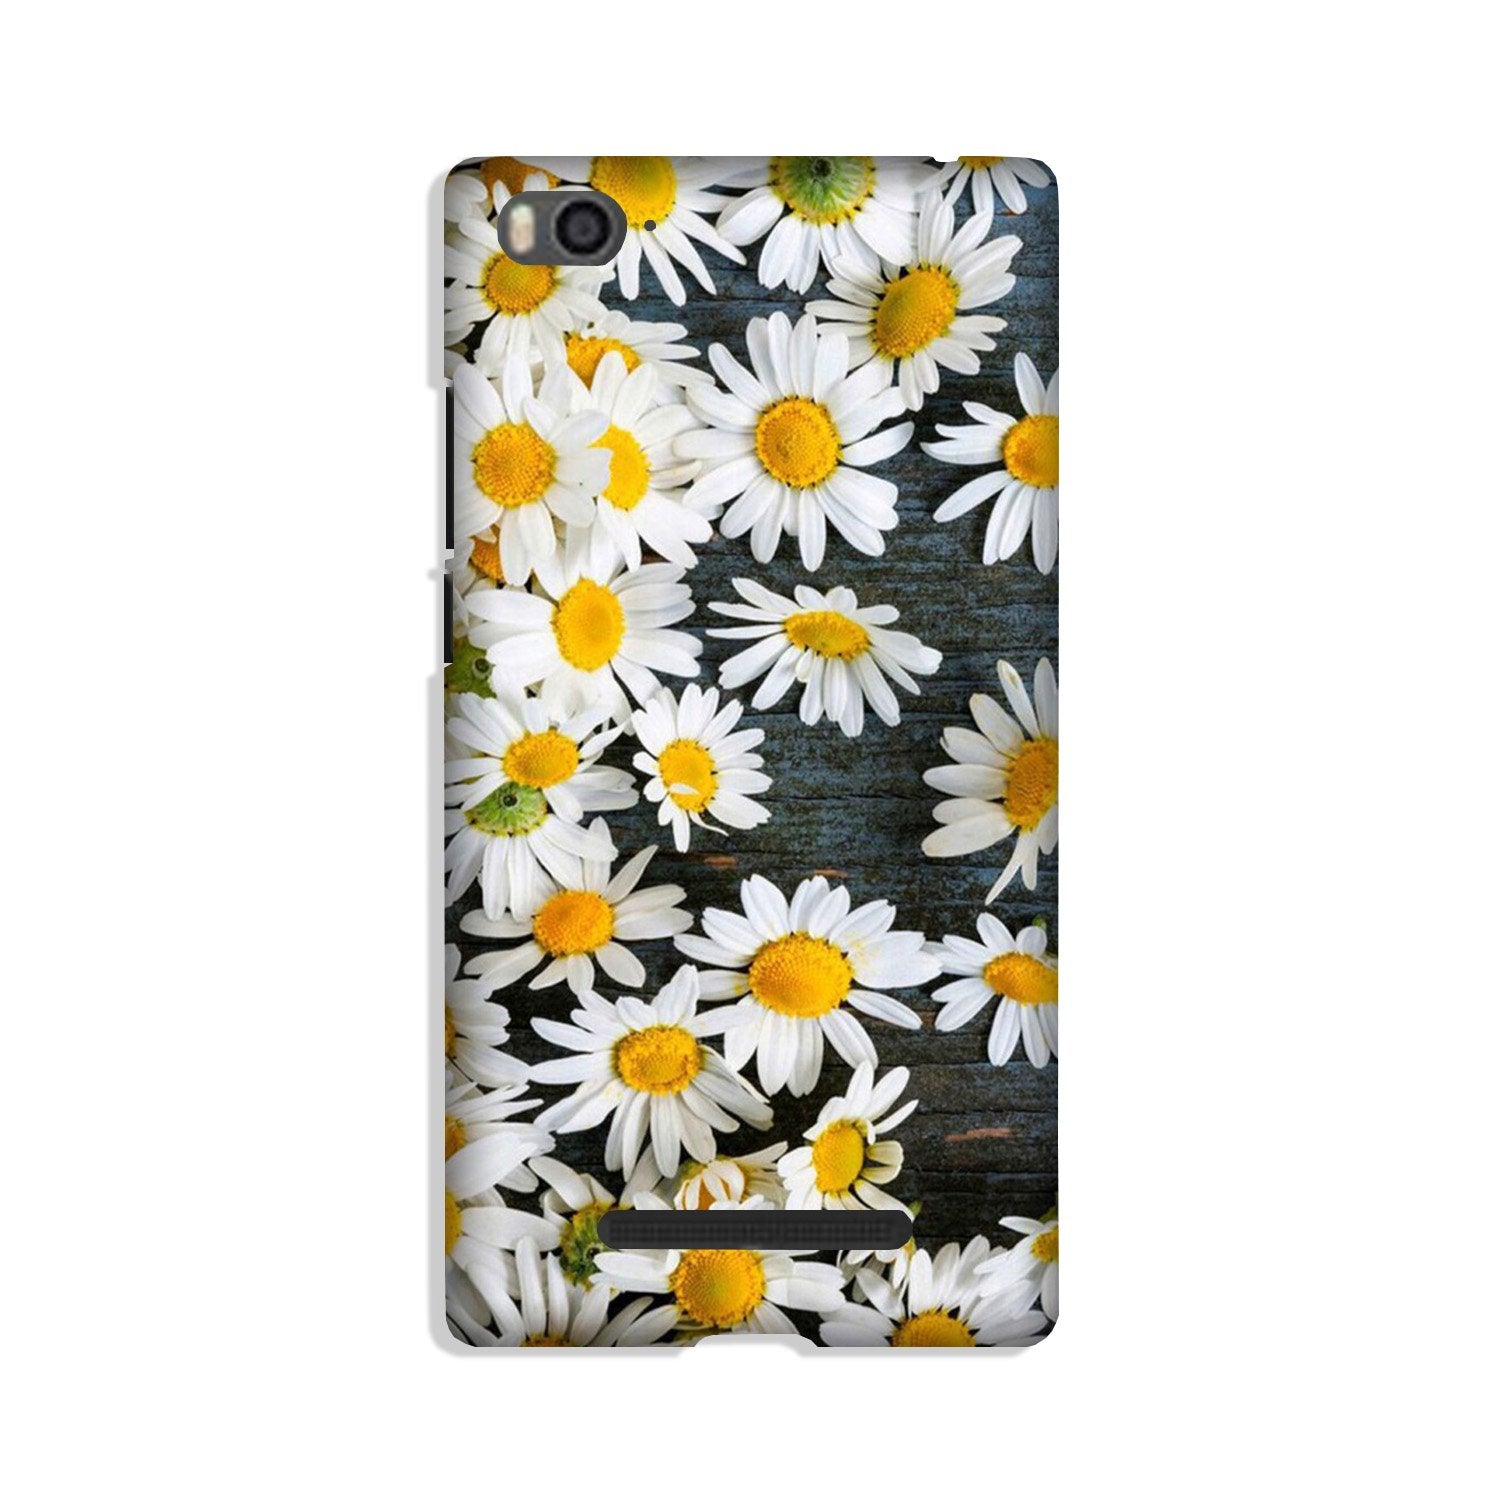 White flowers2 Case for Xiaomi Mi 4i